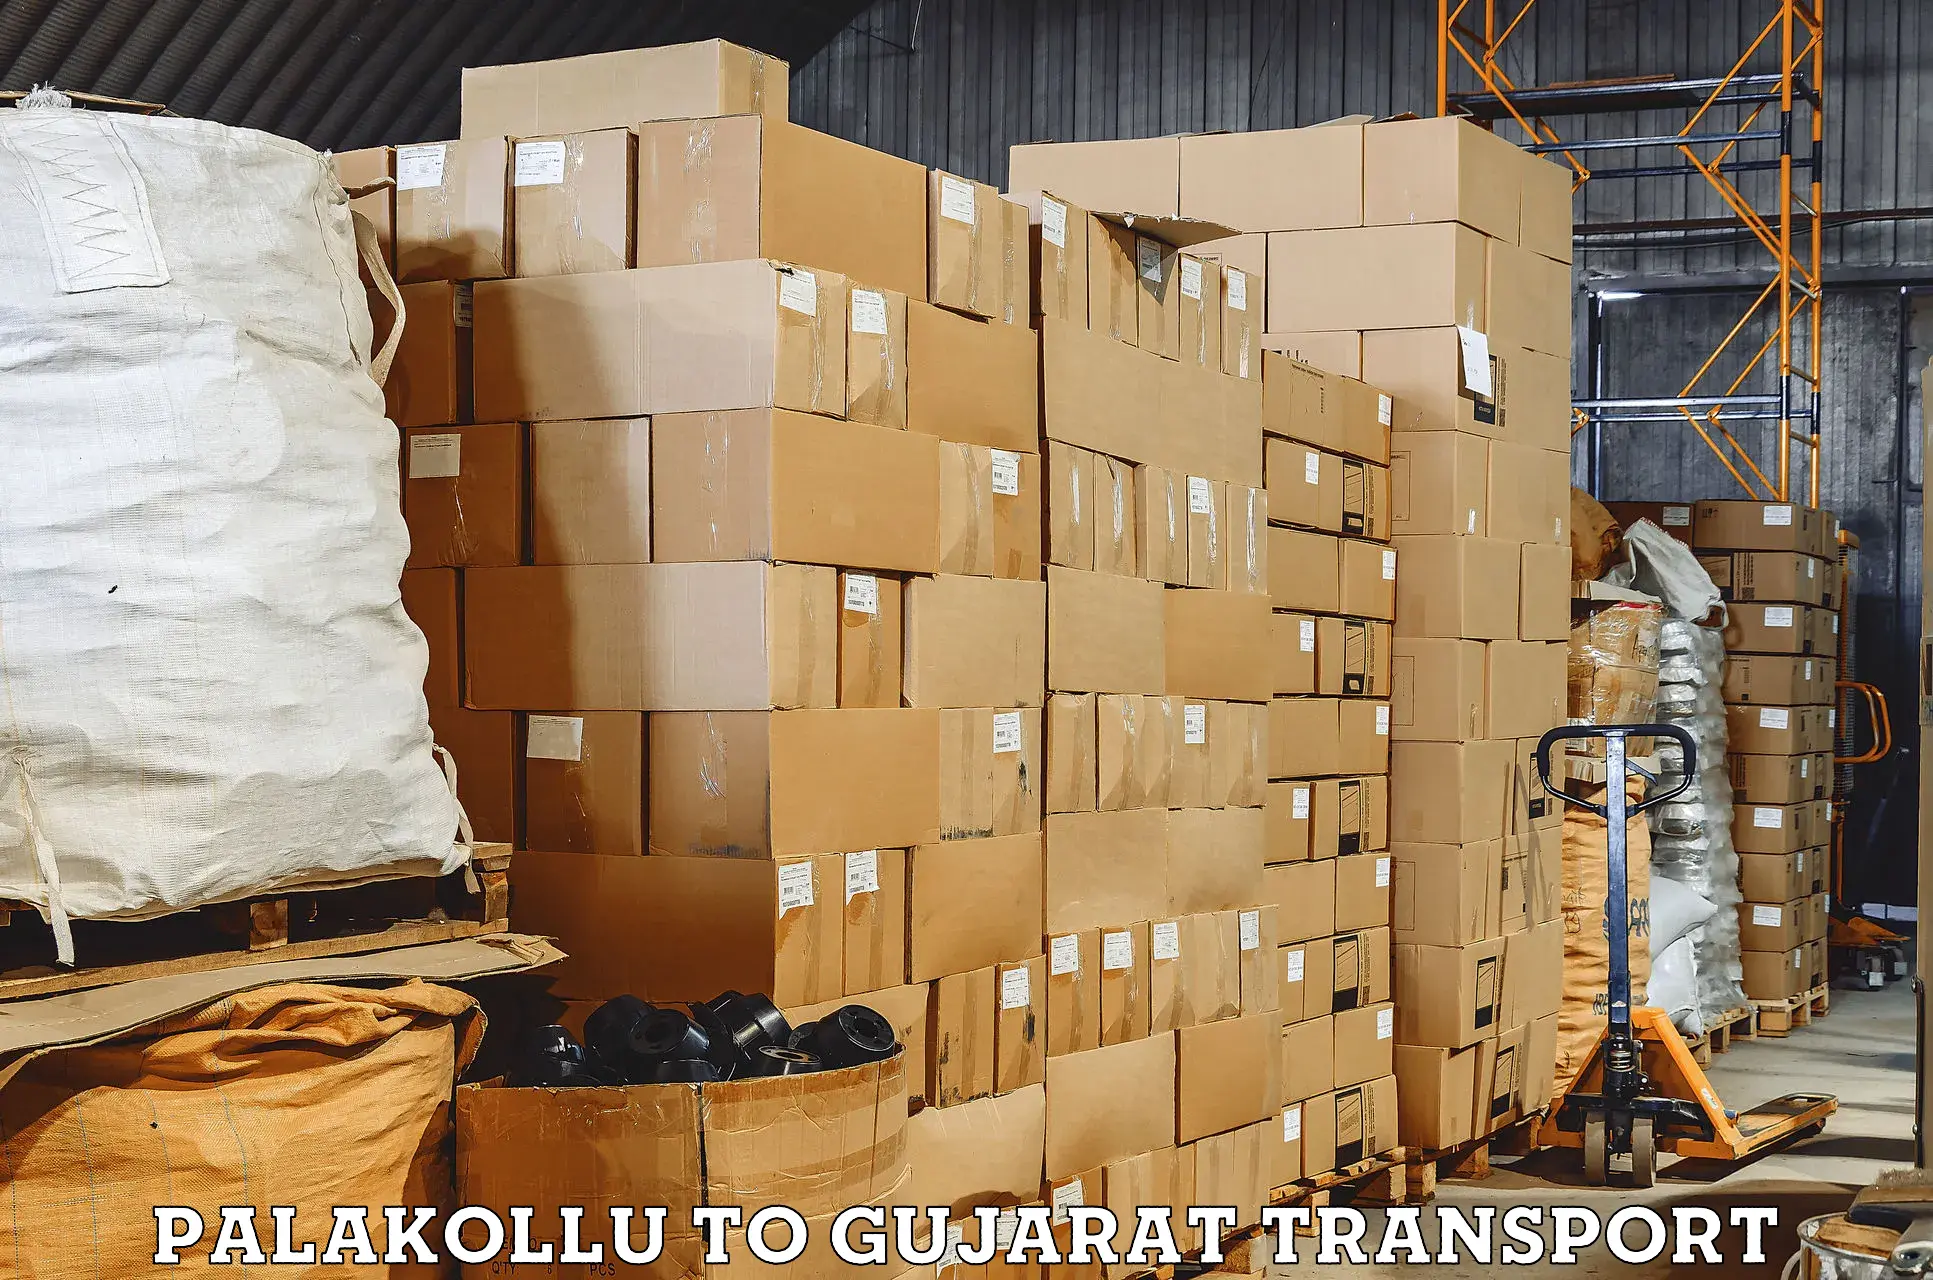 Daily transport service Palakollu to Vapi